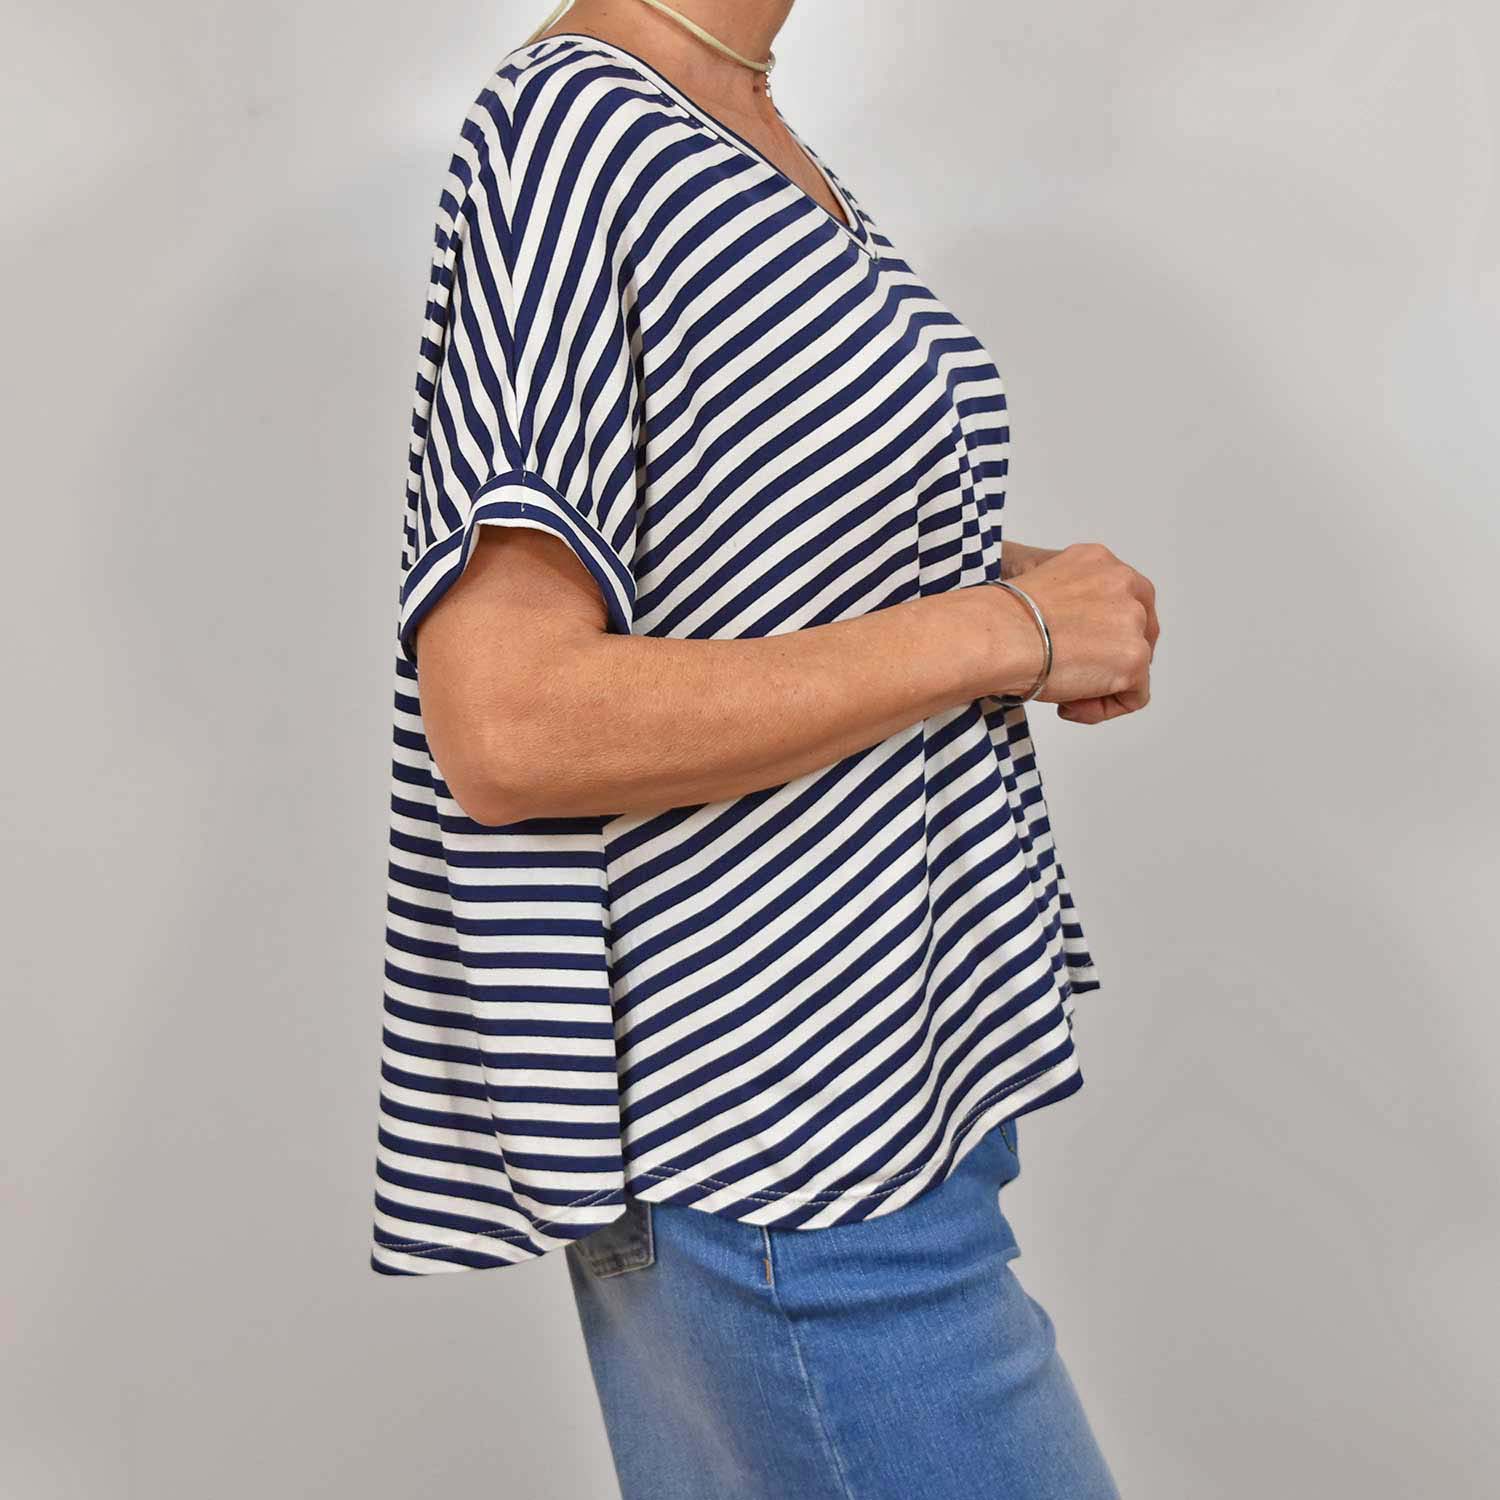 Camiseta pico rayas oversize marino